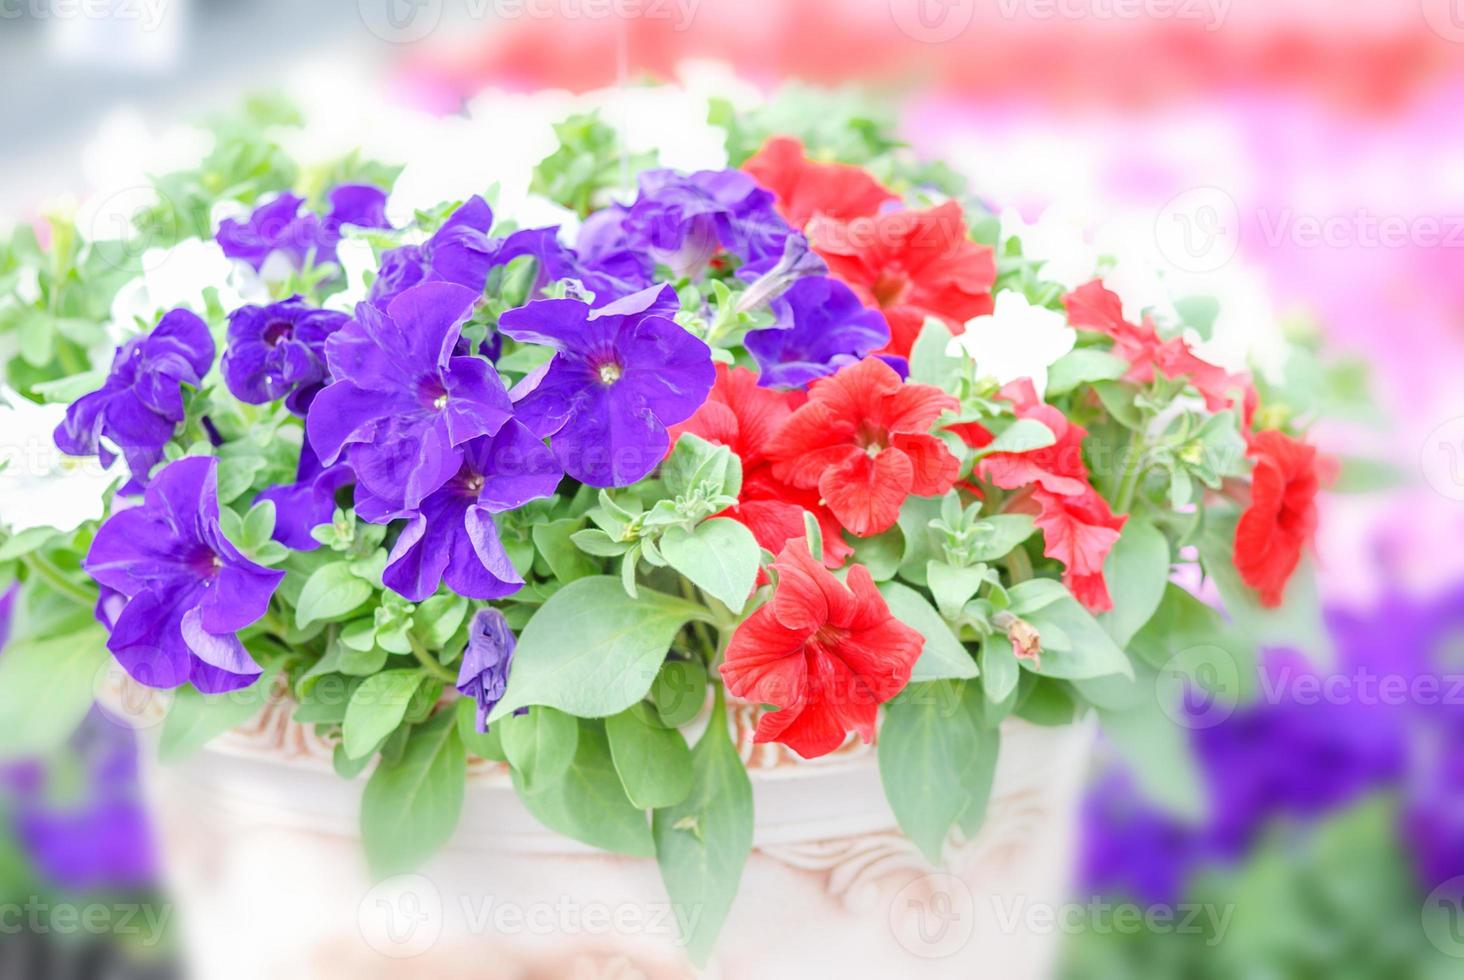 kleurrijke petuniabloemen, grandiflora is de meest populaire variëteit van petunia, met grote enkele of dubbele bloemen die hopen kleurrijke vaste, gestreepte of bonte bloemen vormen. foto